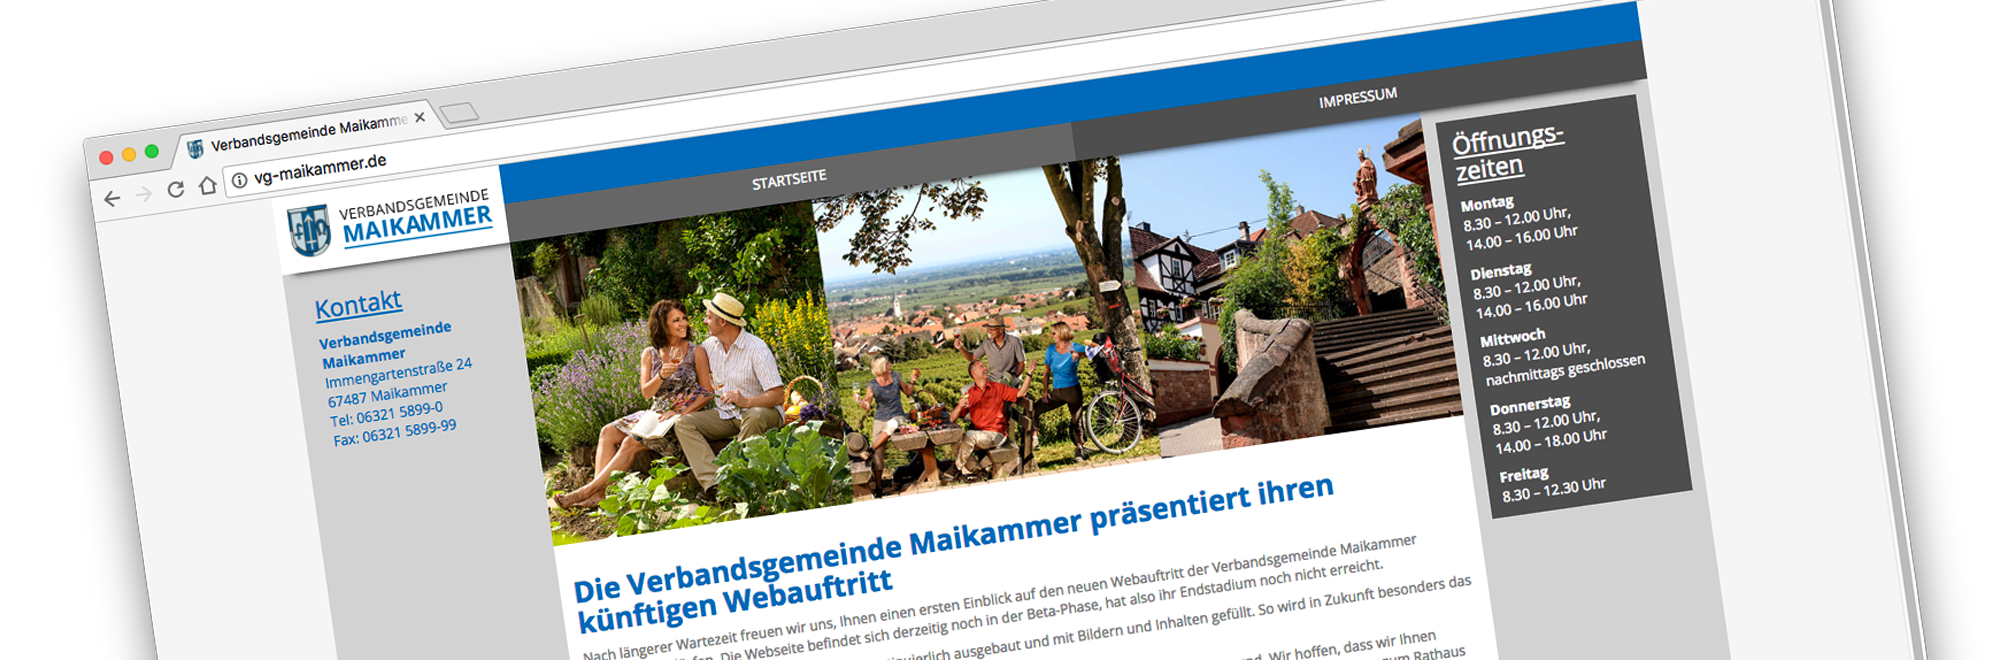 Verbandsgemeinde Maikammer präsentiert künftigen Webauftritt